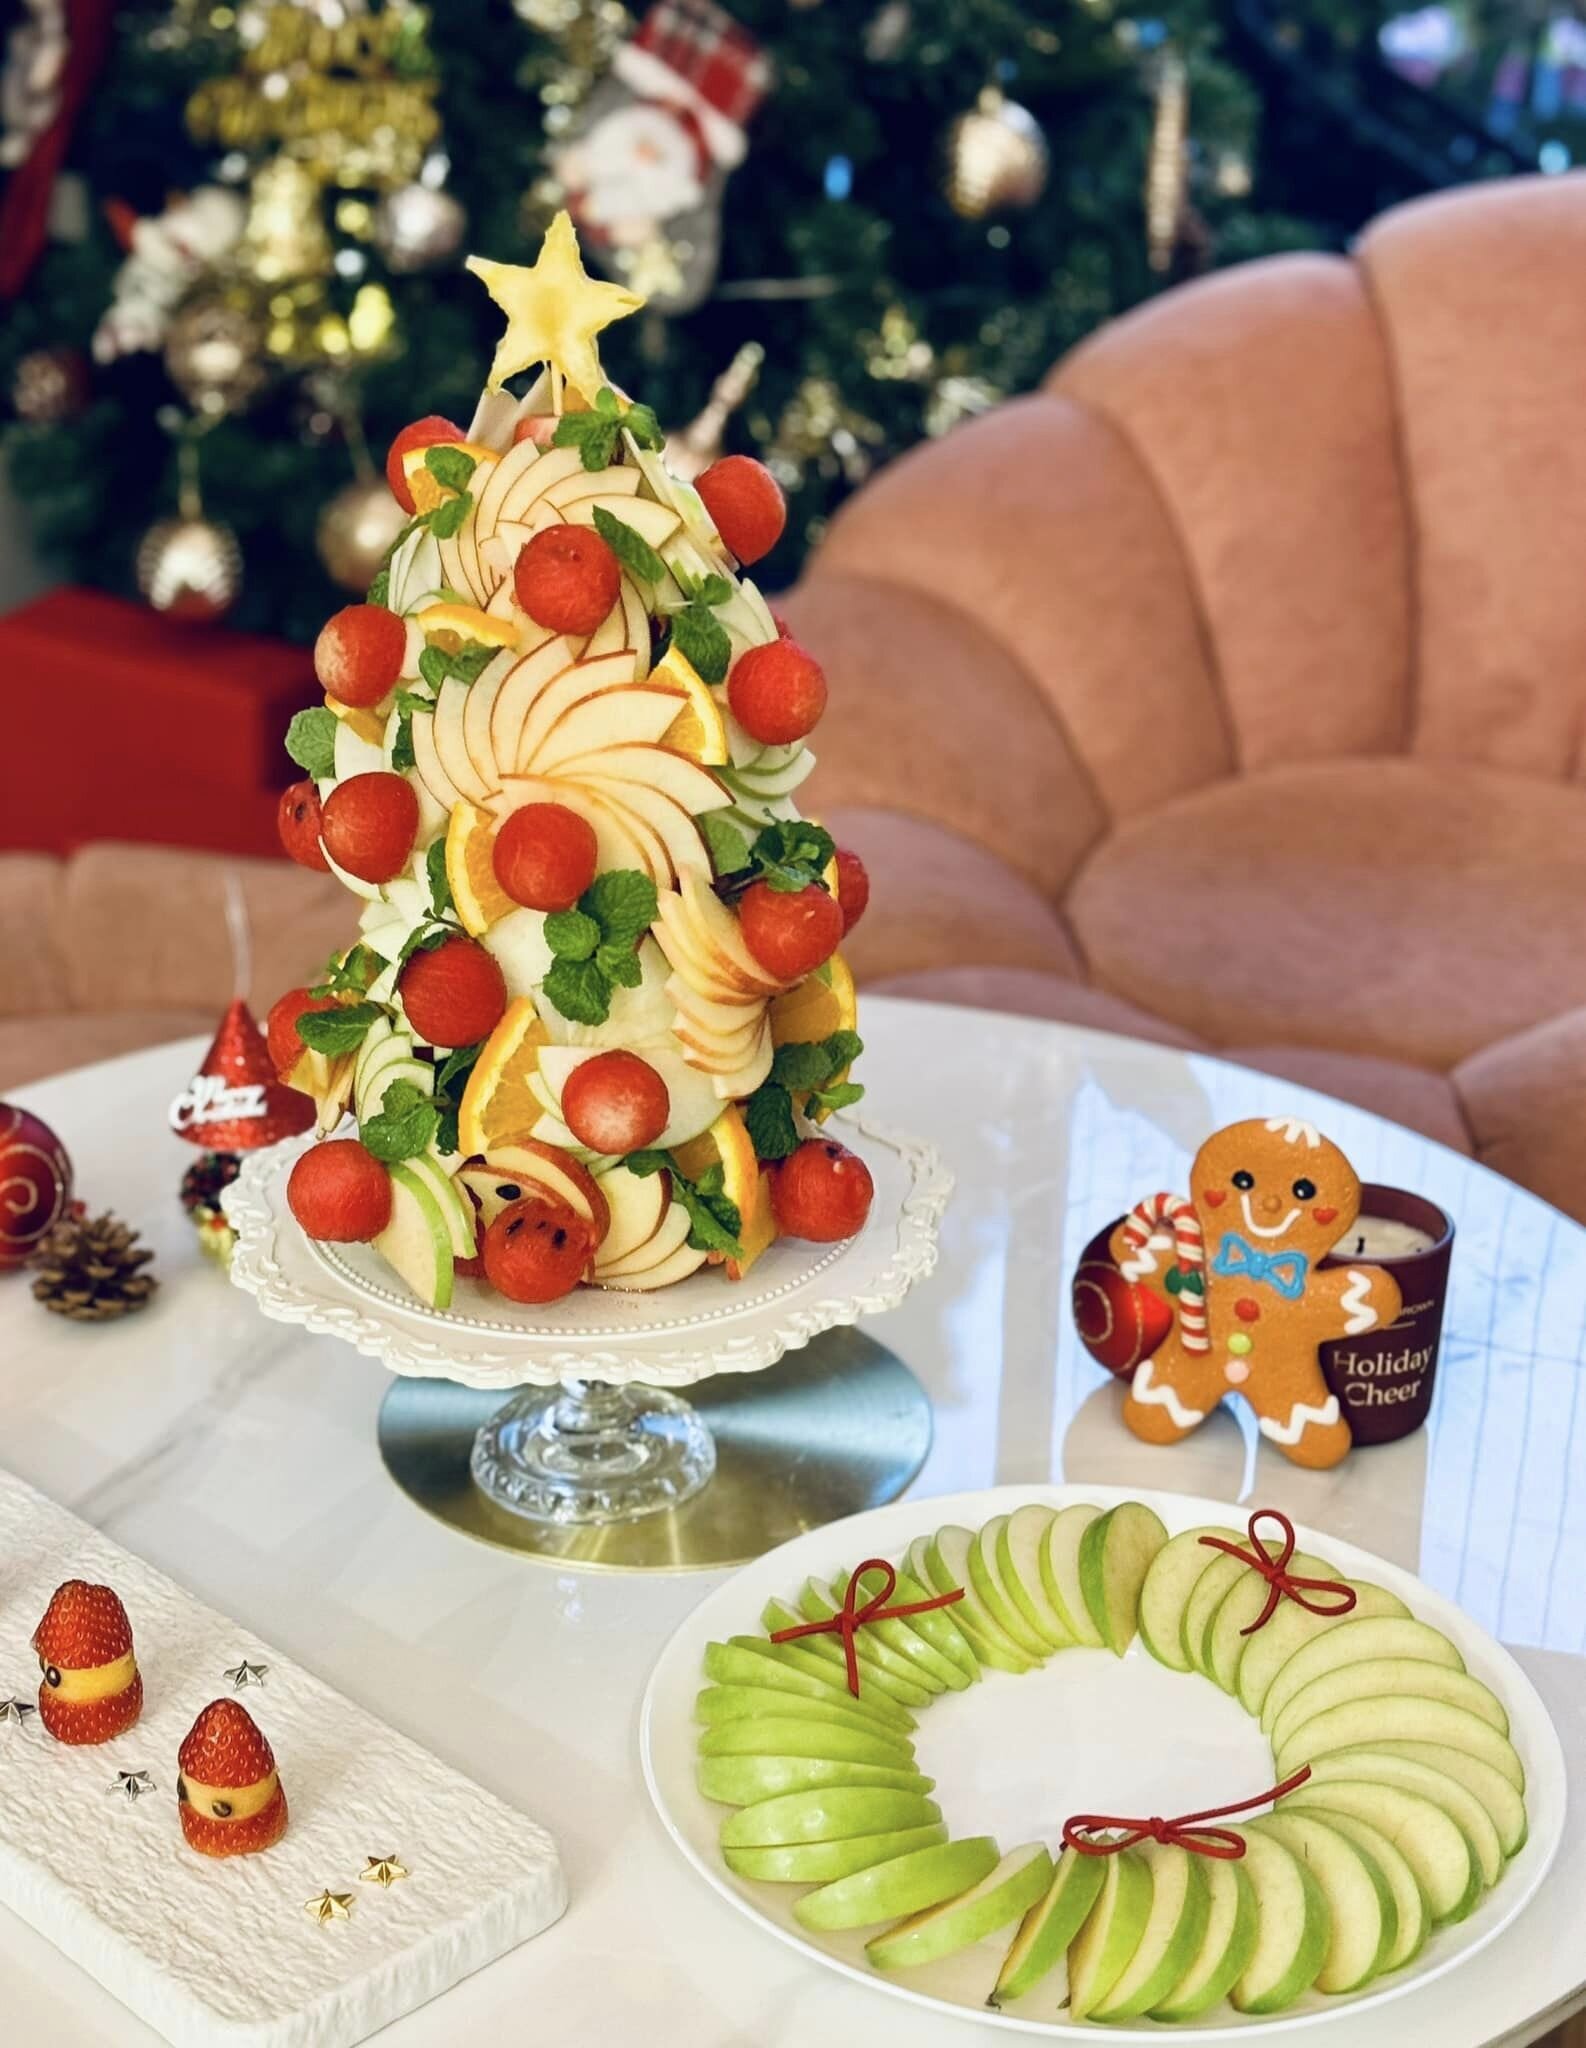 Chỉ cần trang trí thêm vài ông già Noel bằng trái dâu nhỏ xinh và chiếc bánh gừng là không khí Giáng sinh đã đầy ắp. (Ảnh: Ngọc Bích)